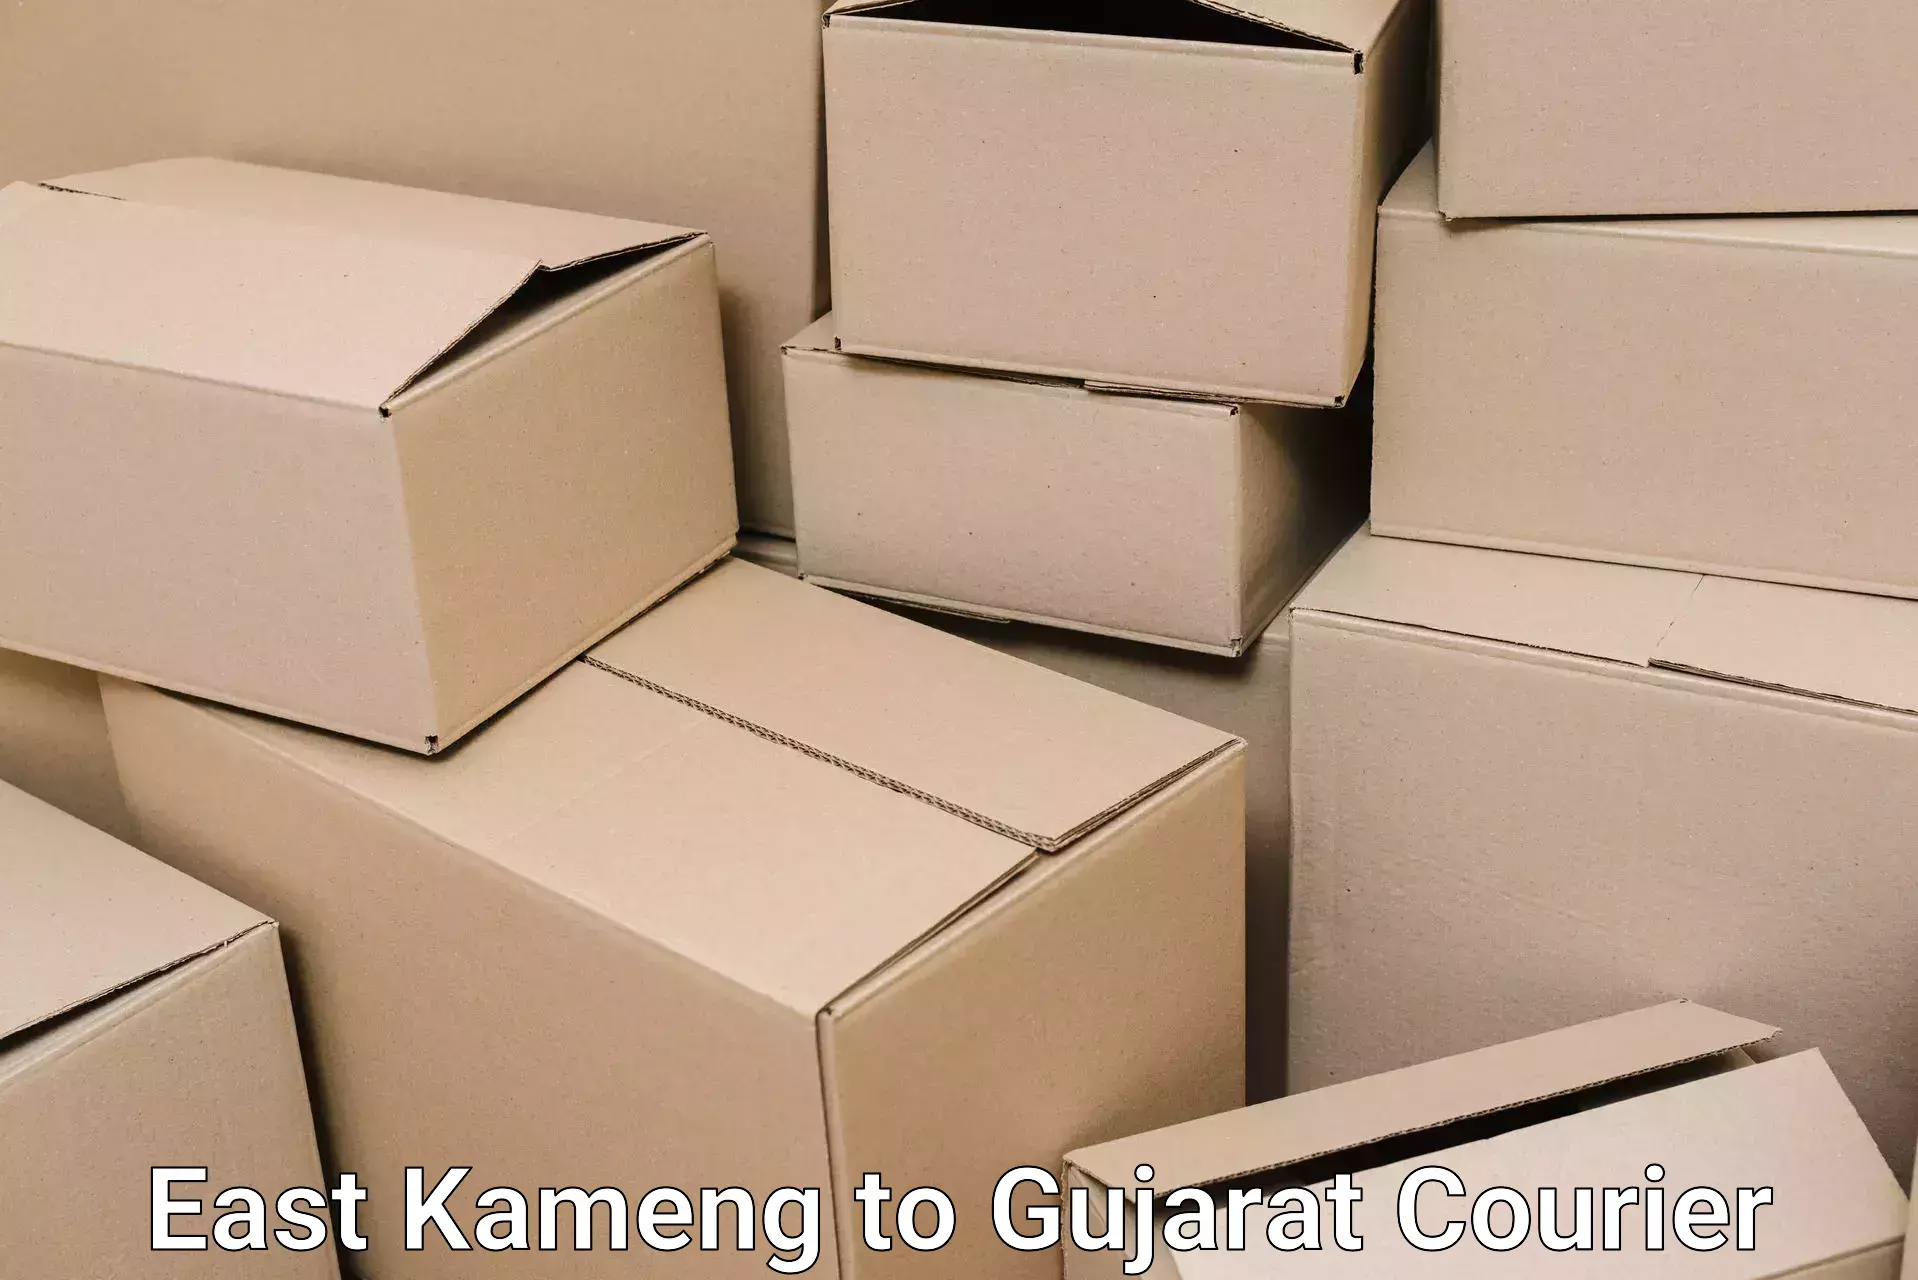 Furniture transport experts East Kameng to Jetpur